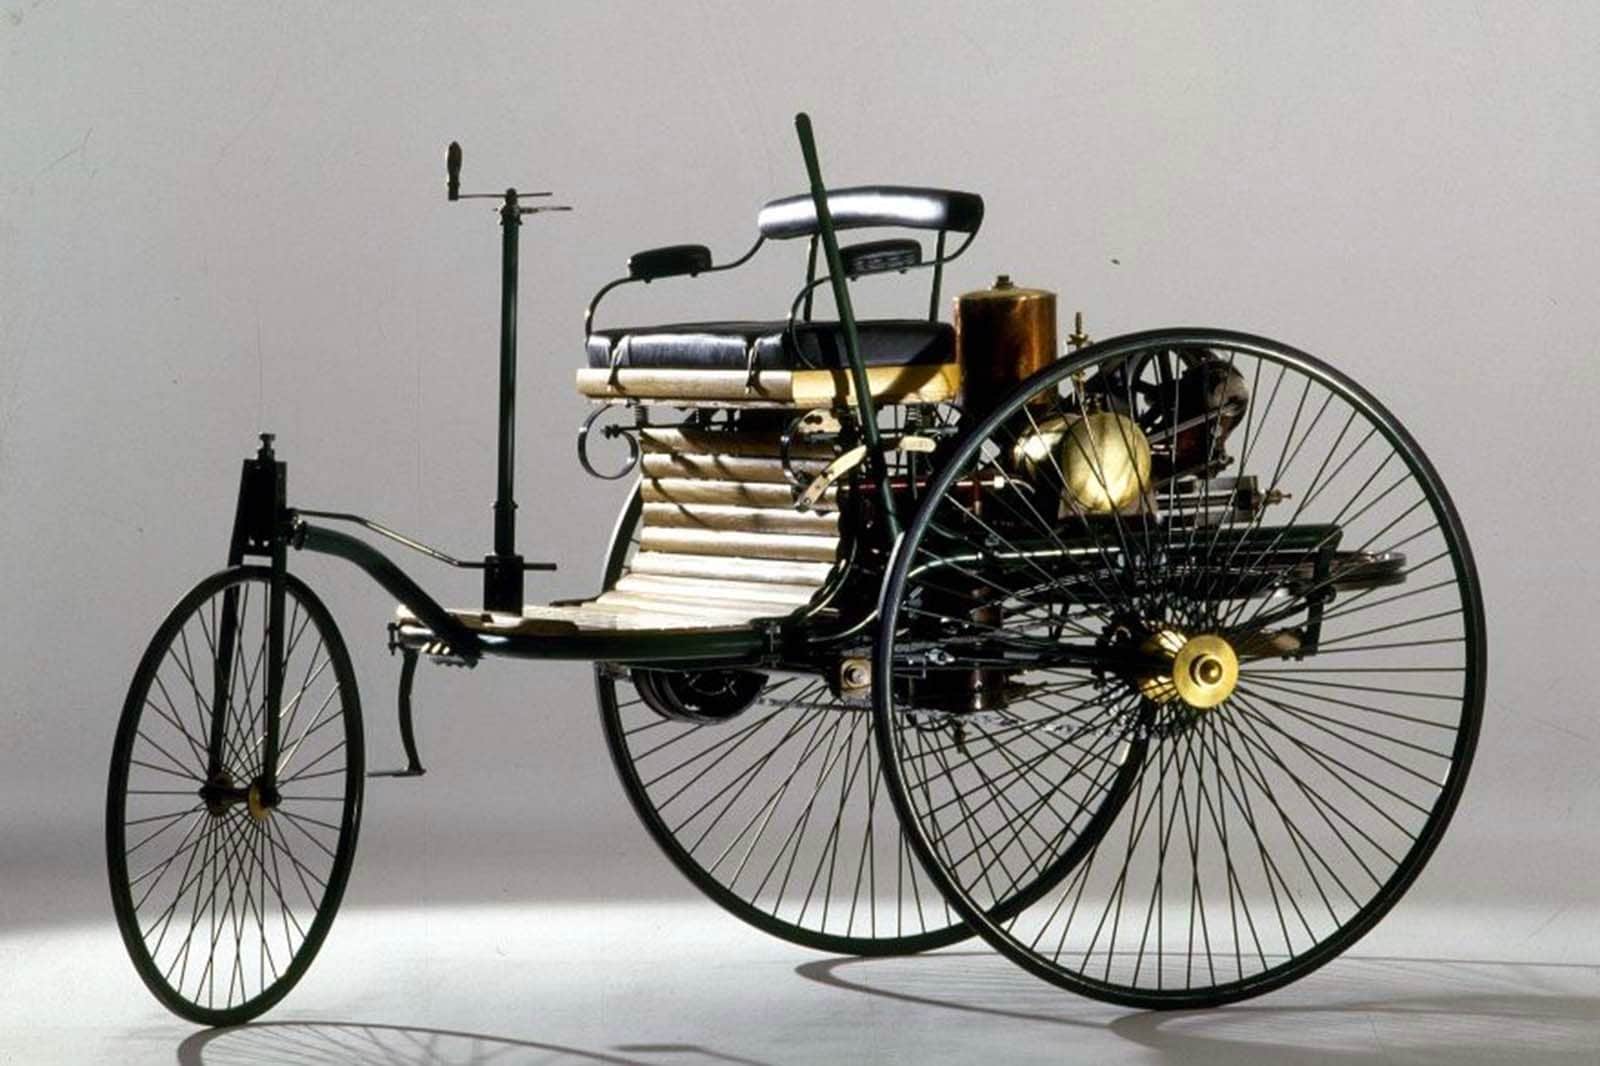 1886 Benz Patent Motorwagen First Drive Review | Edmunds